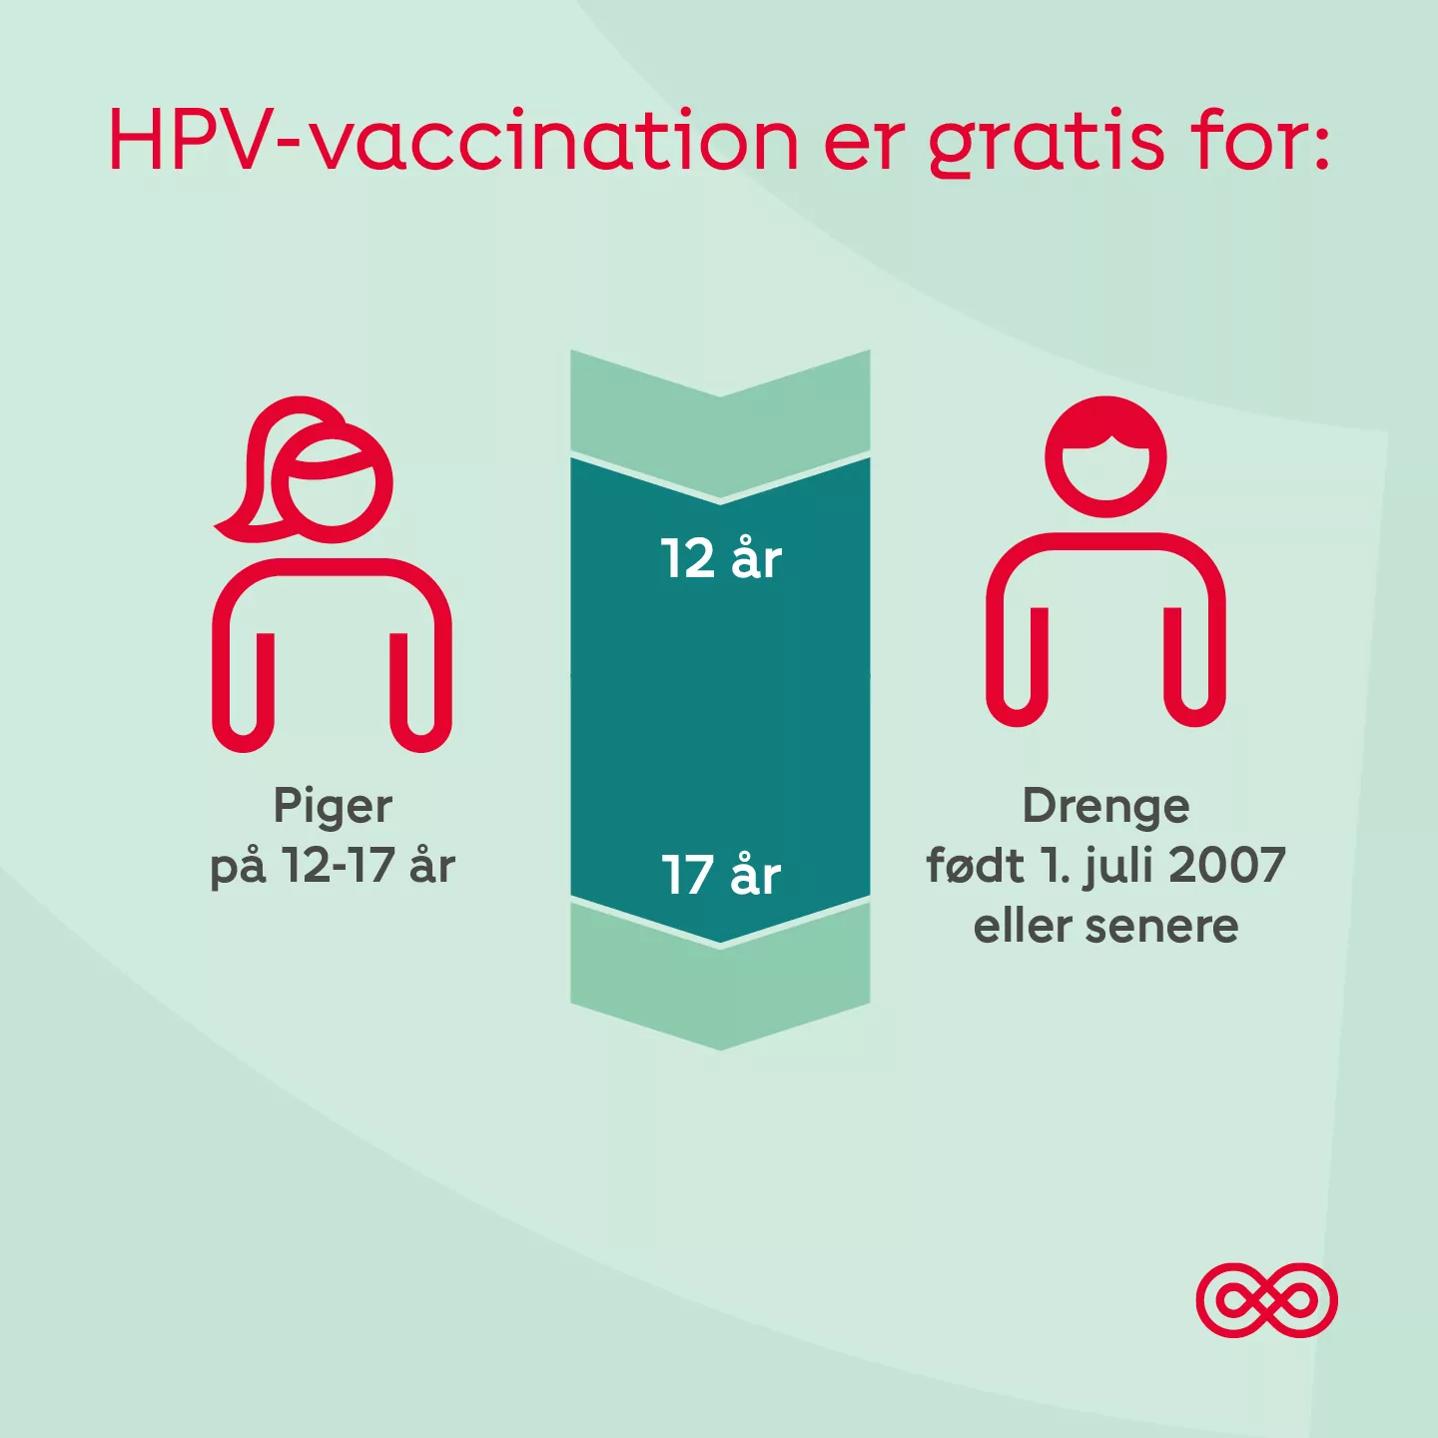 HPV-vaccinen er gratis for drenge og piger, når de fylder 12 år